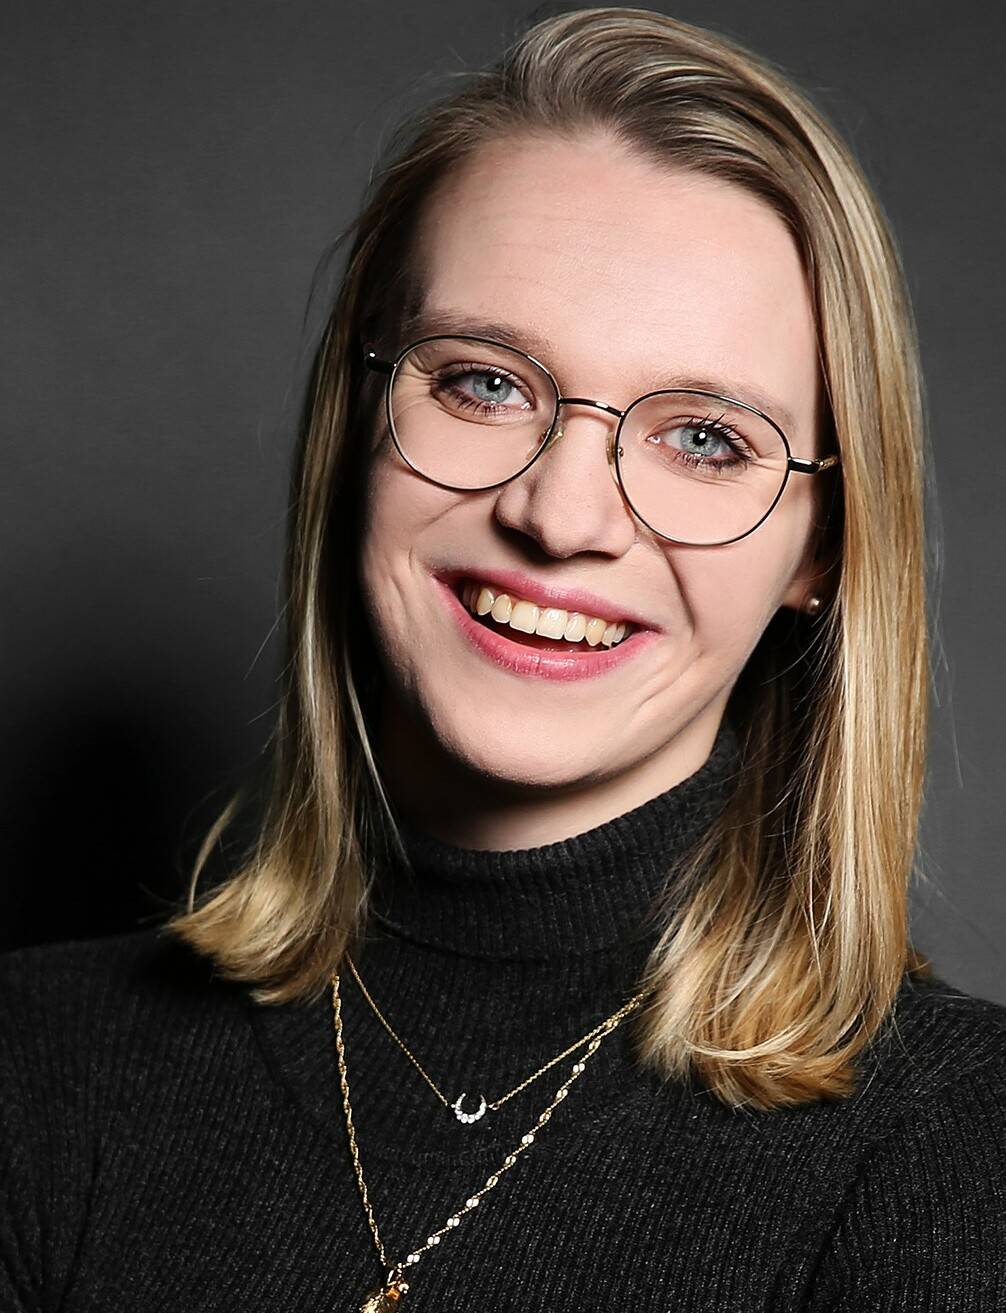  Studentin und Innovationsmanagerin Aline Gruber.   